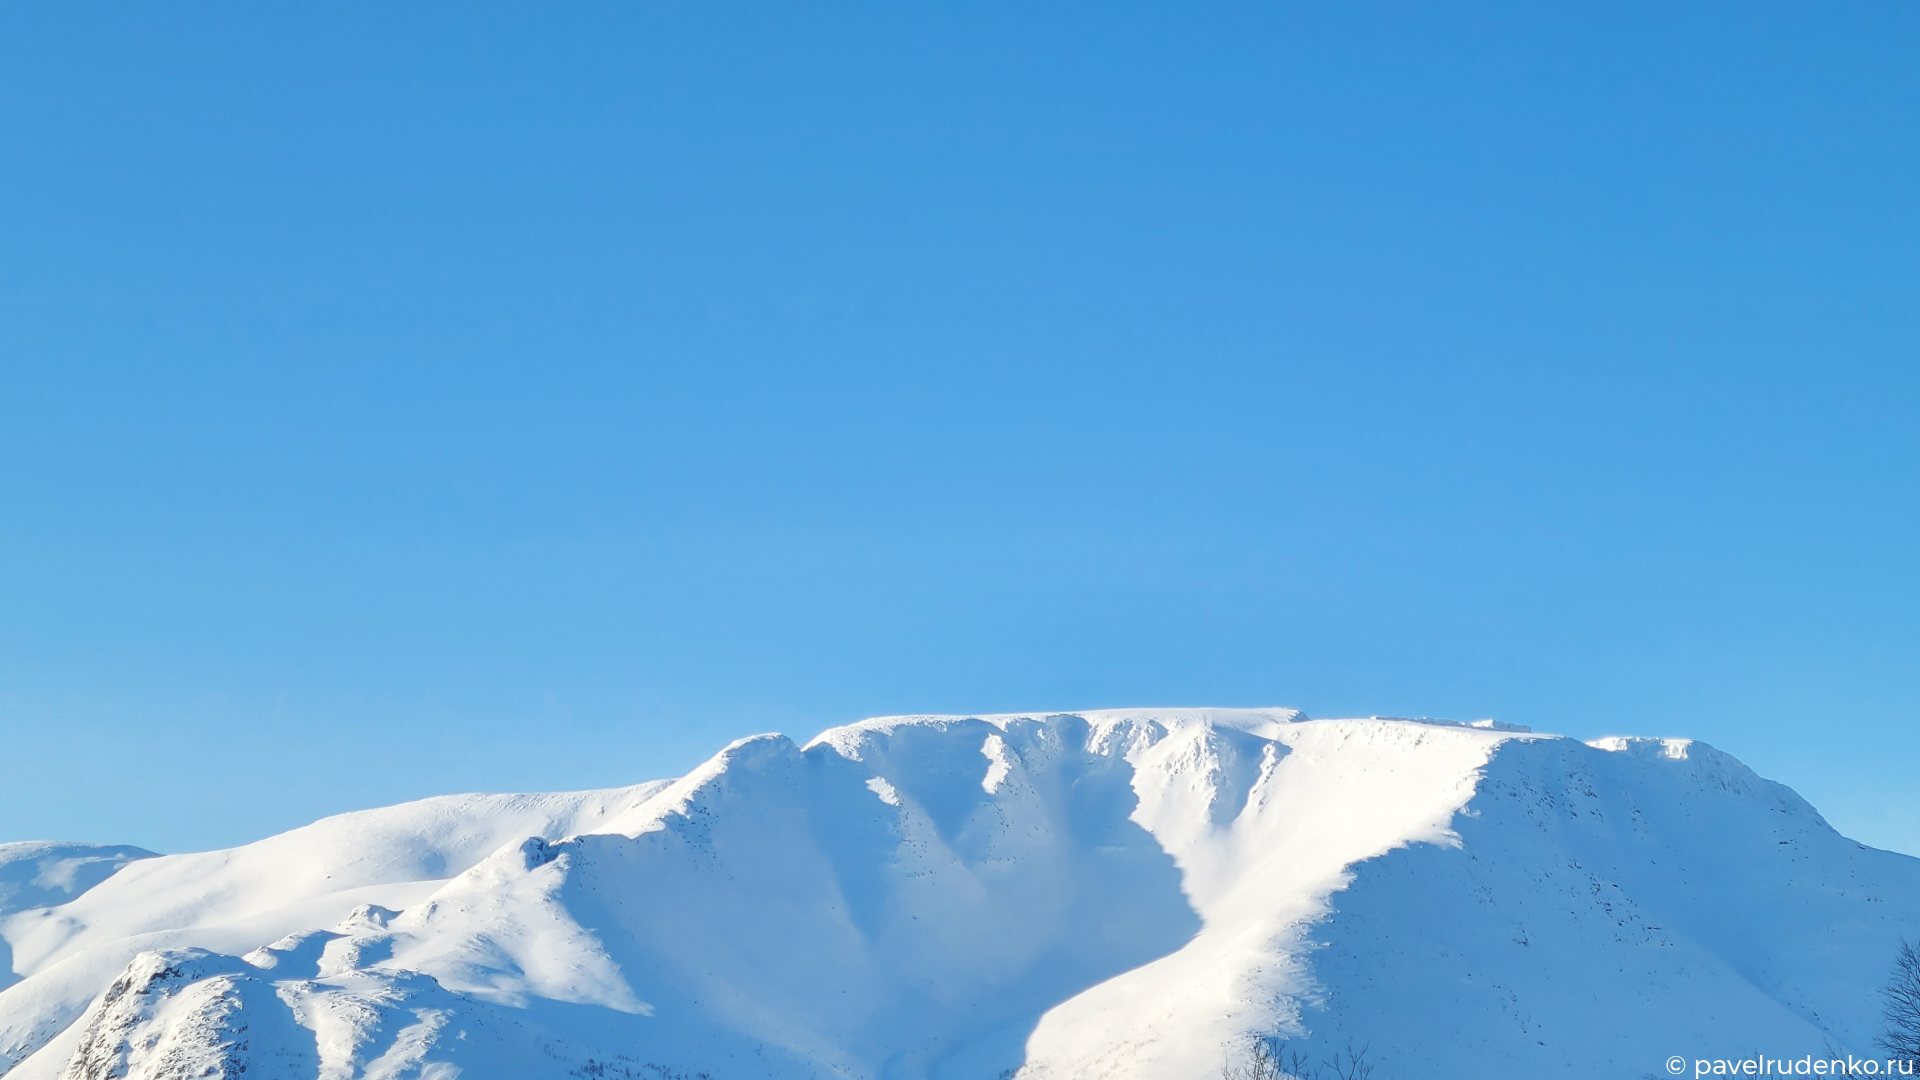 Фотография Вудъявчорр Хибины Кировск Кольский полуостров горы лавинные курсы лыжный туризм